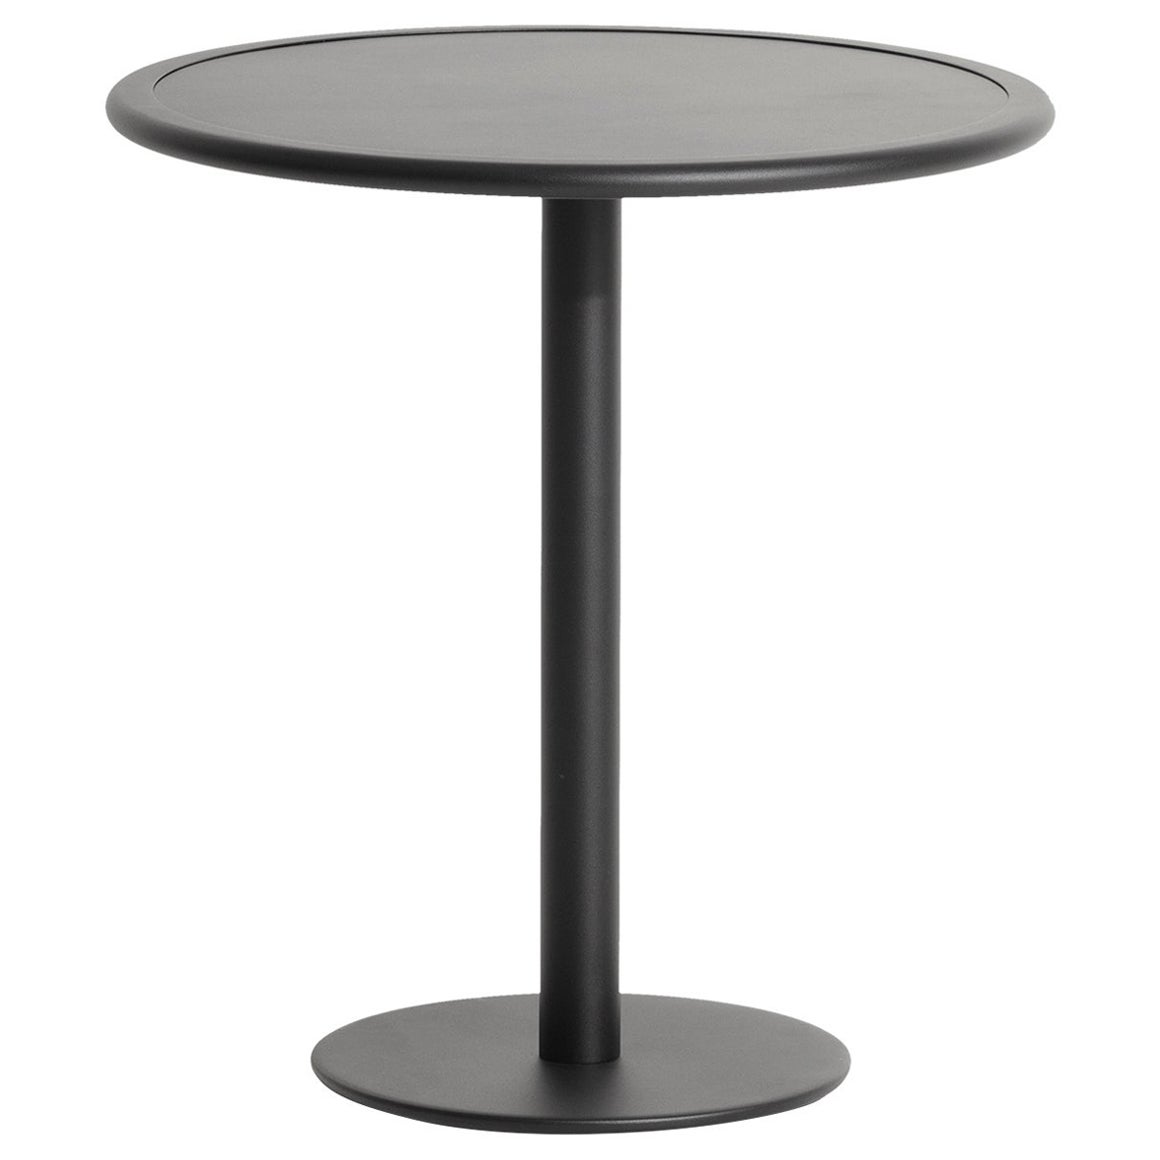 Petite table de salle à manger ronde bistro Week-end en aluminium noir, de Friture, 2017 en vente